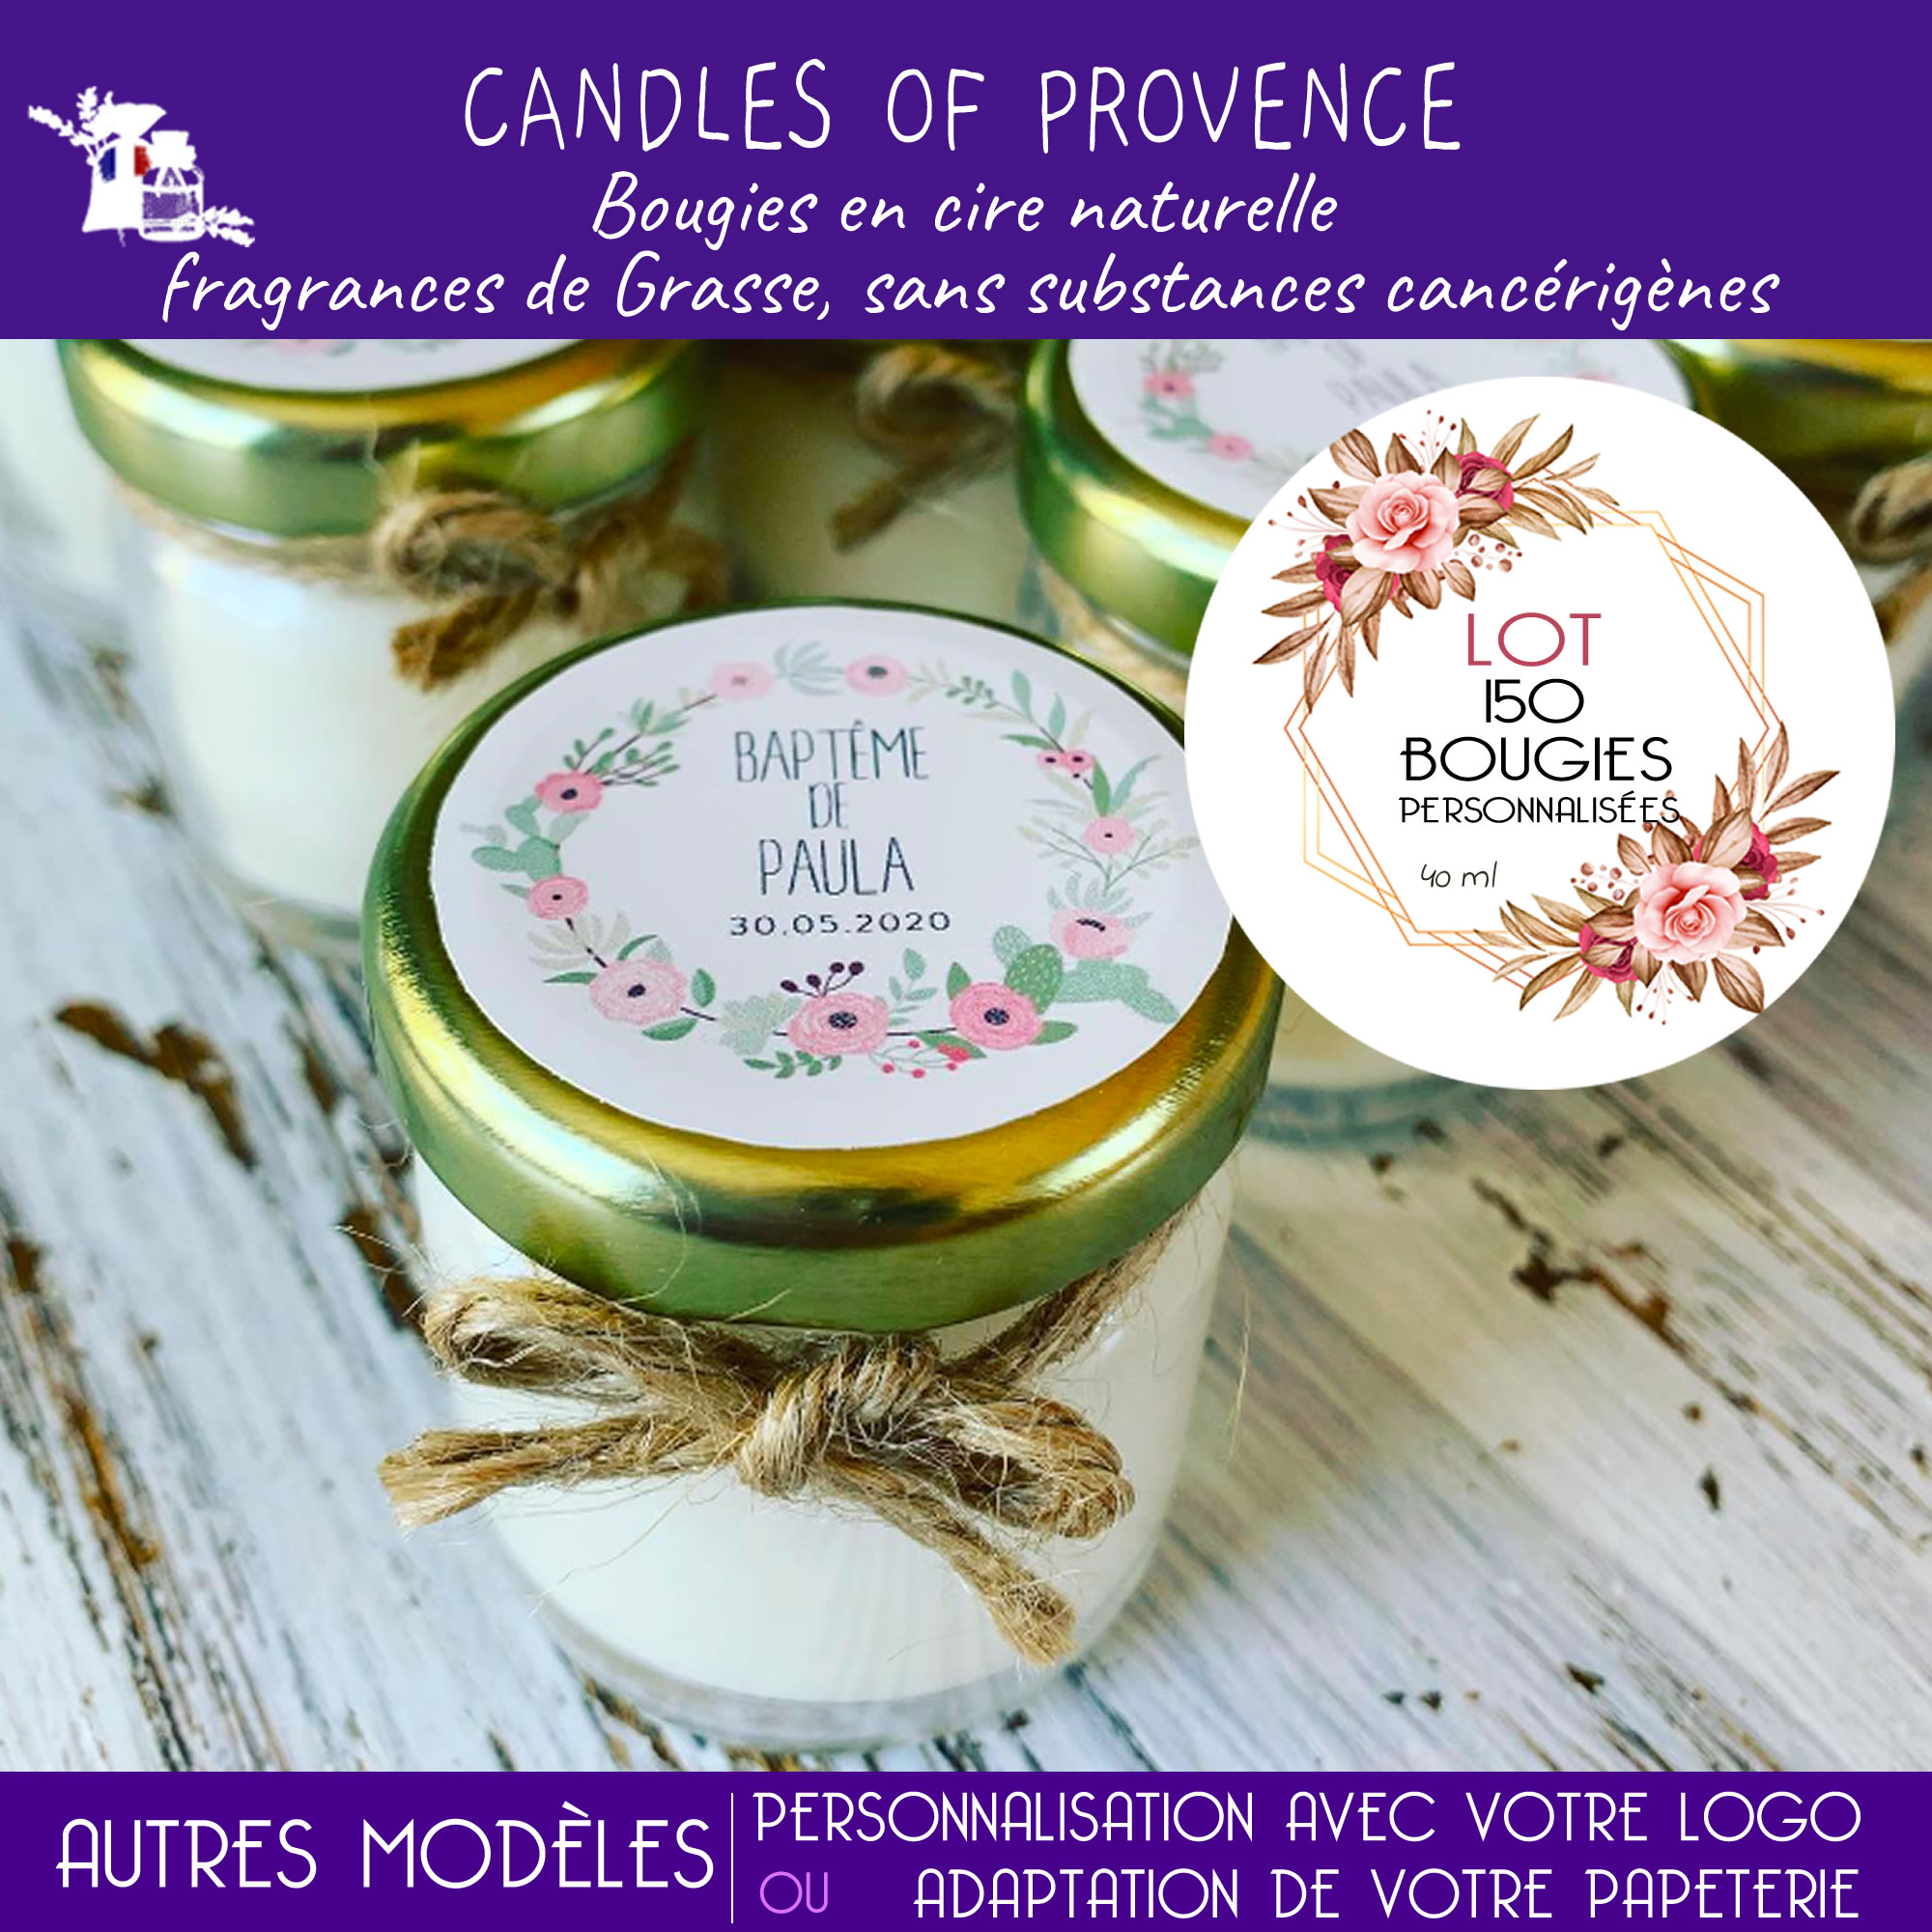 Candles of Provence: Bougies personnalisées et Cadeaux invités